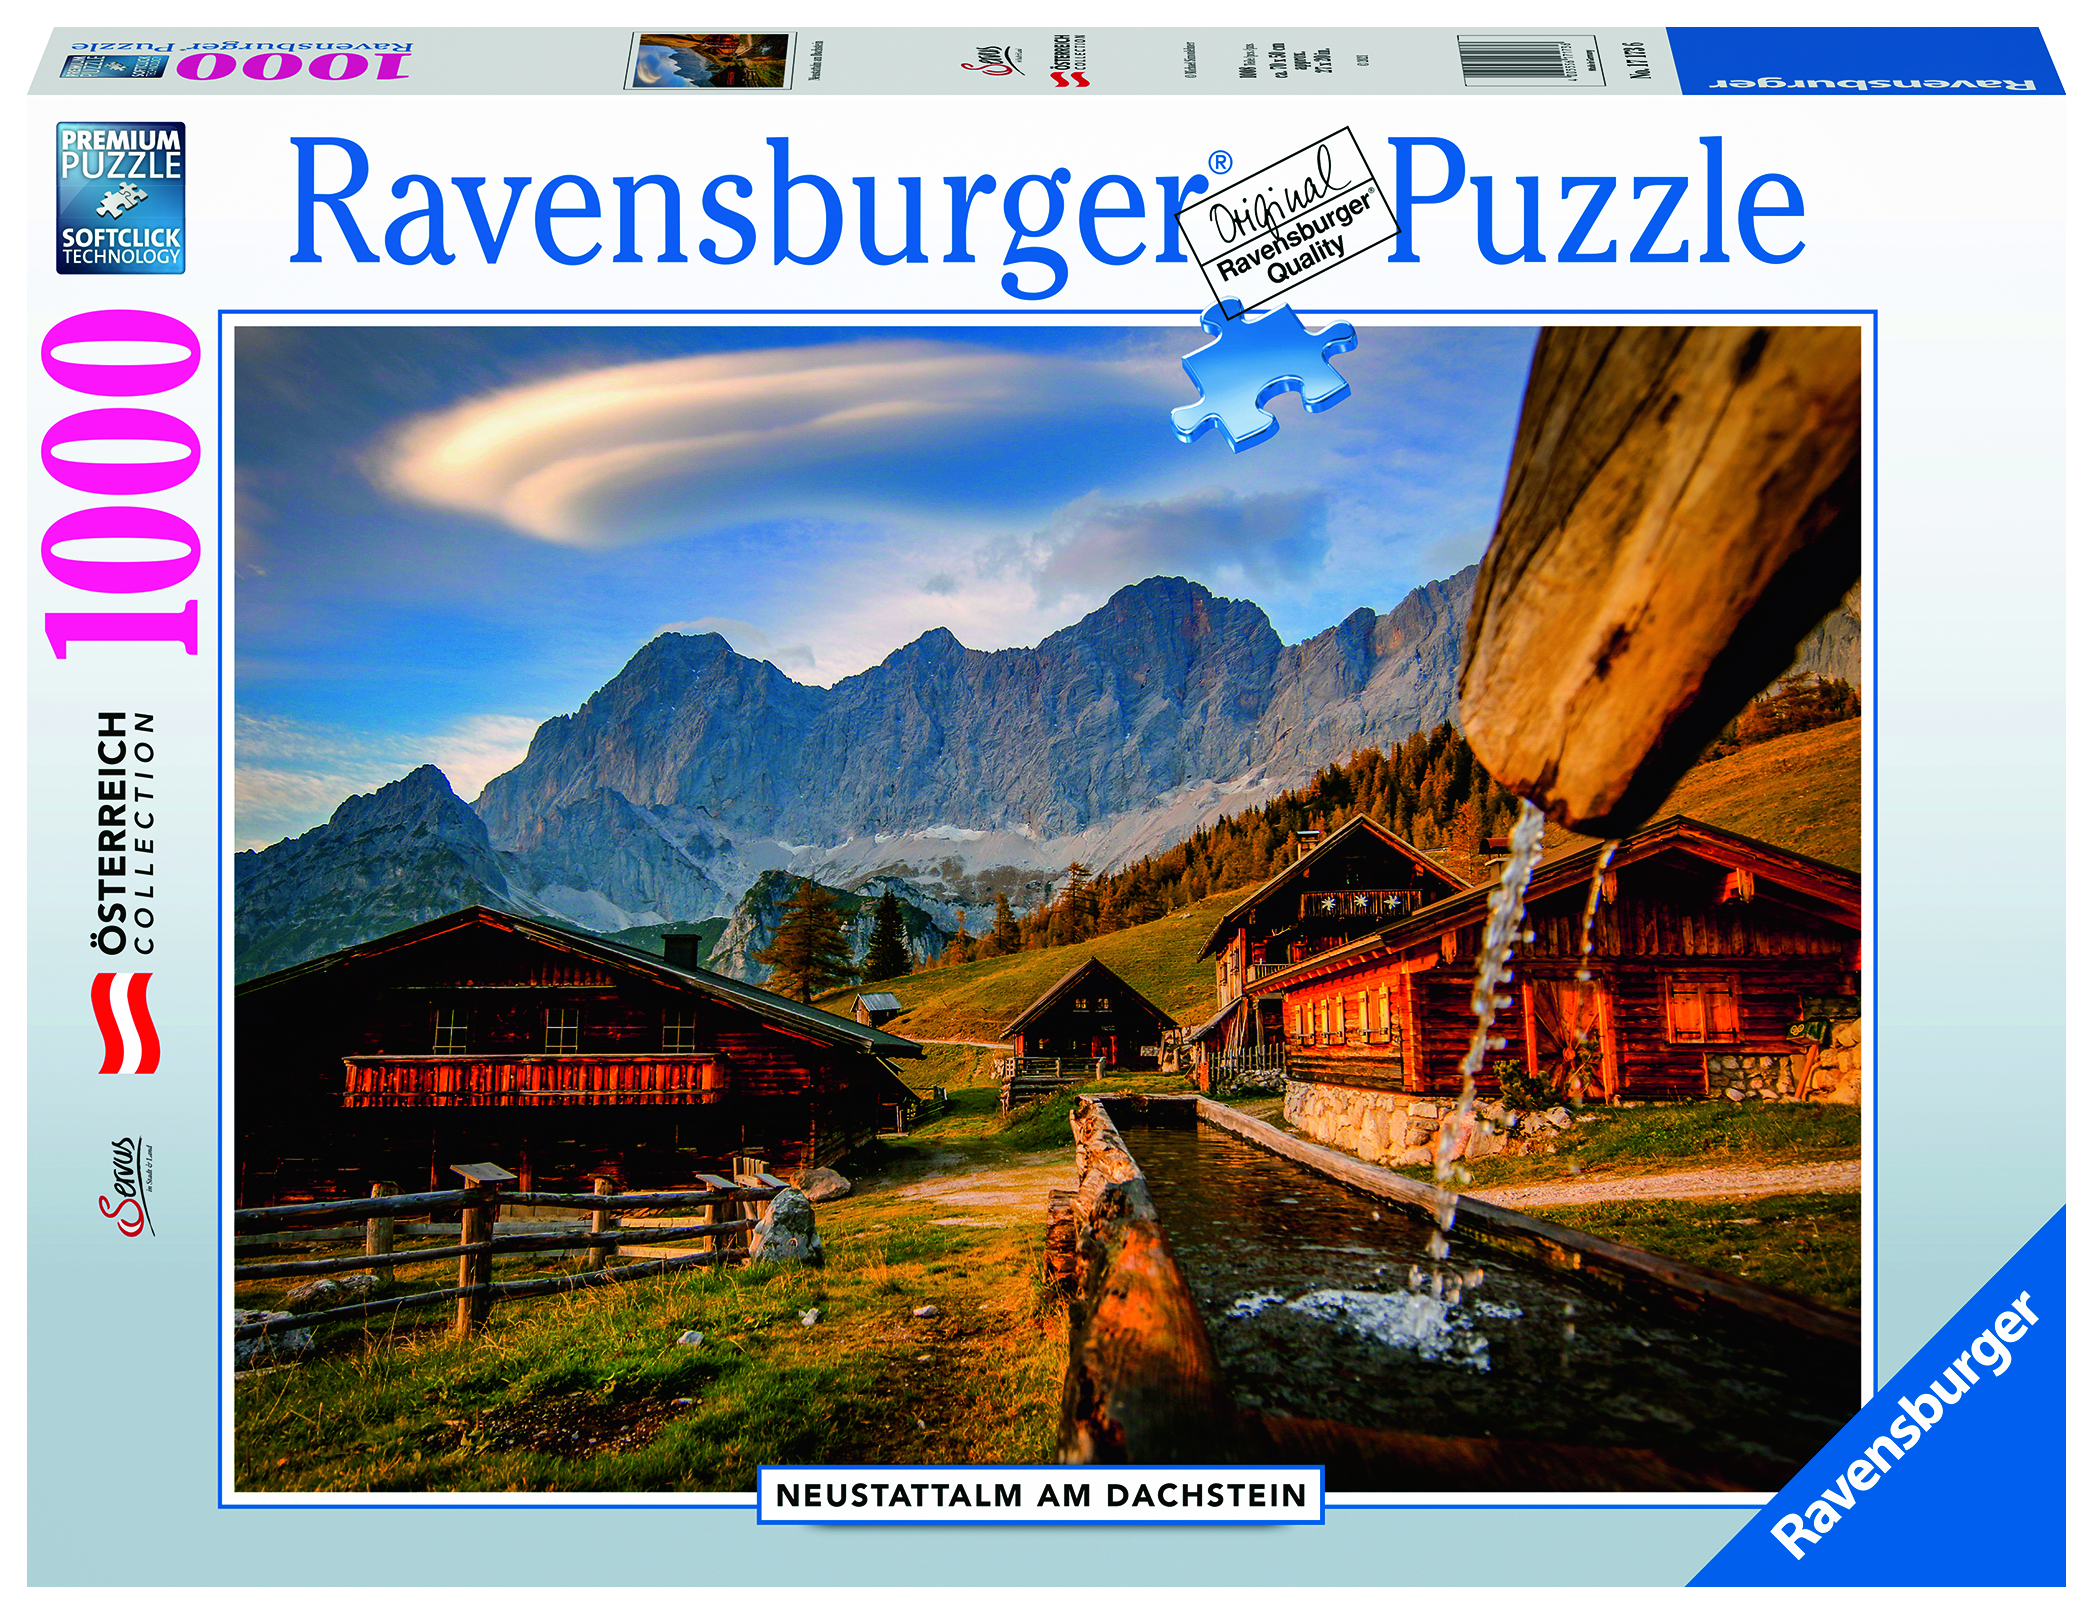 17173 Neustattalm am Dachstein Puzzle RAVENSBURGER Mehrfarbig